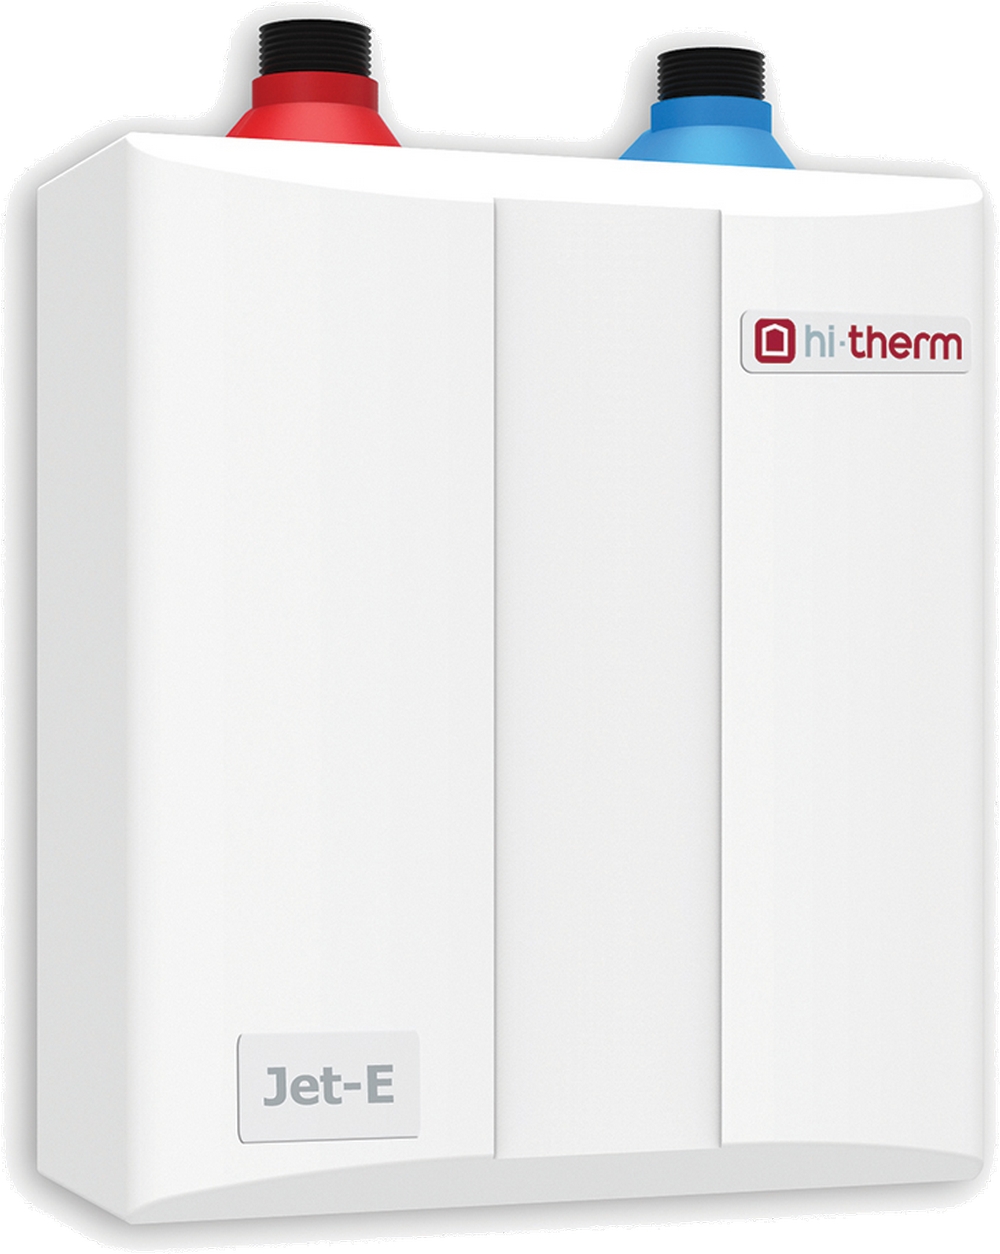 Безнапорный проточный водонагреватель Hi-Therm JET-E 8.0